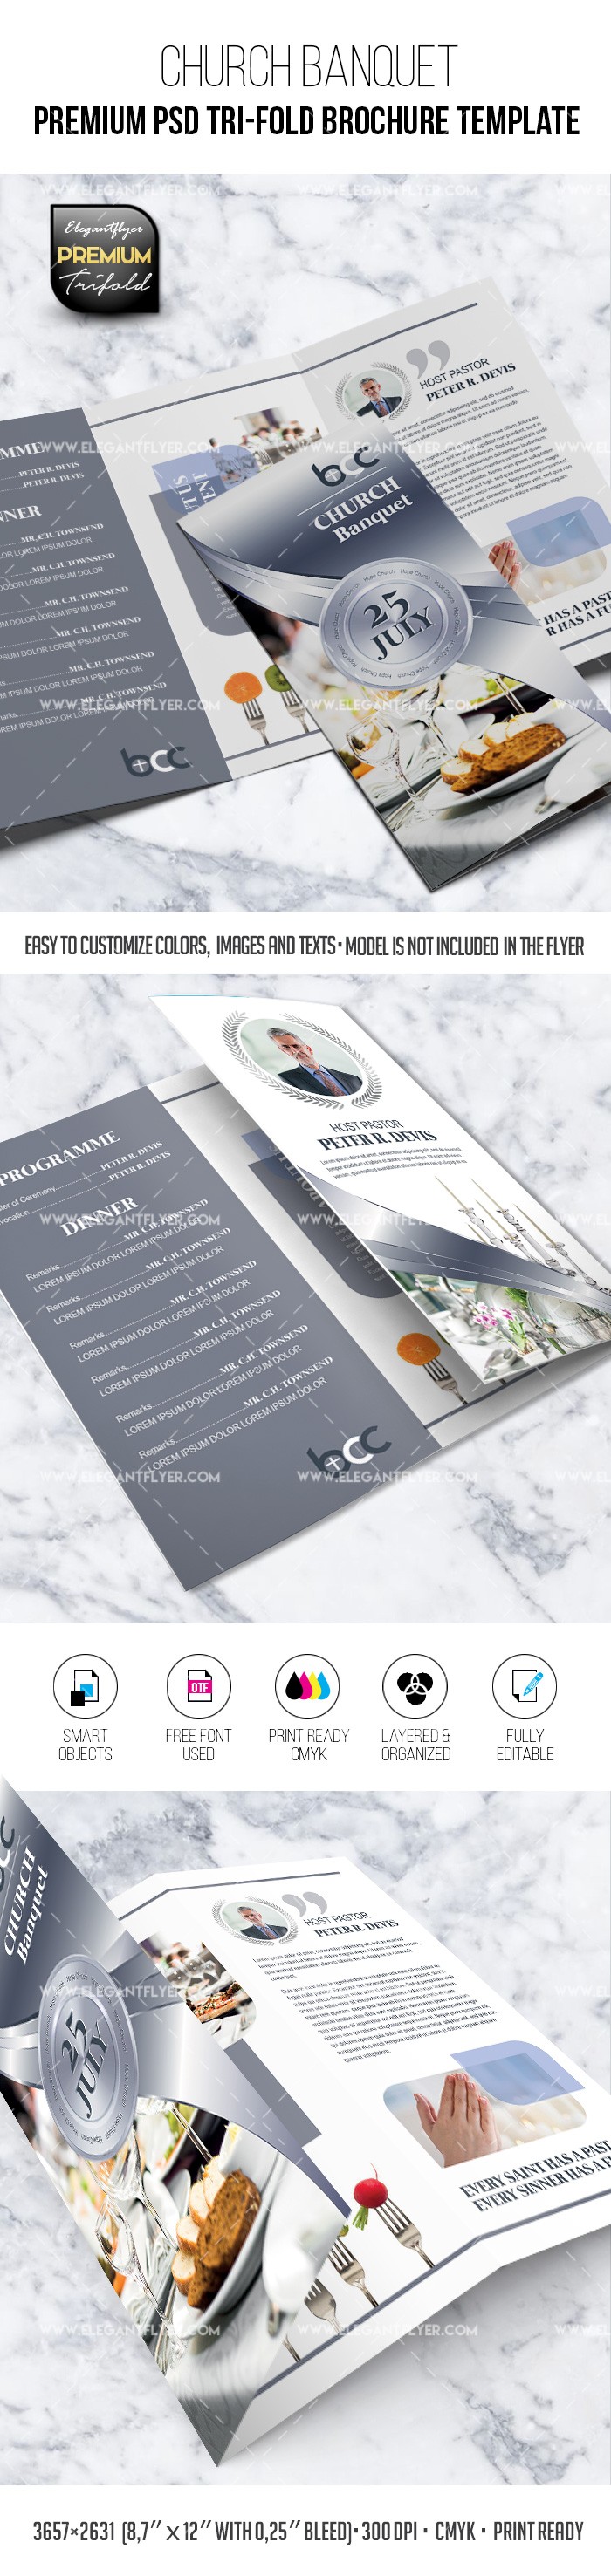 Banchetto della Chiesa - Modello premium di brochure PSD a tre ante by ElegantFlyer